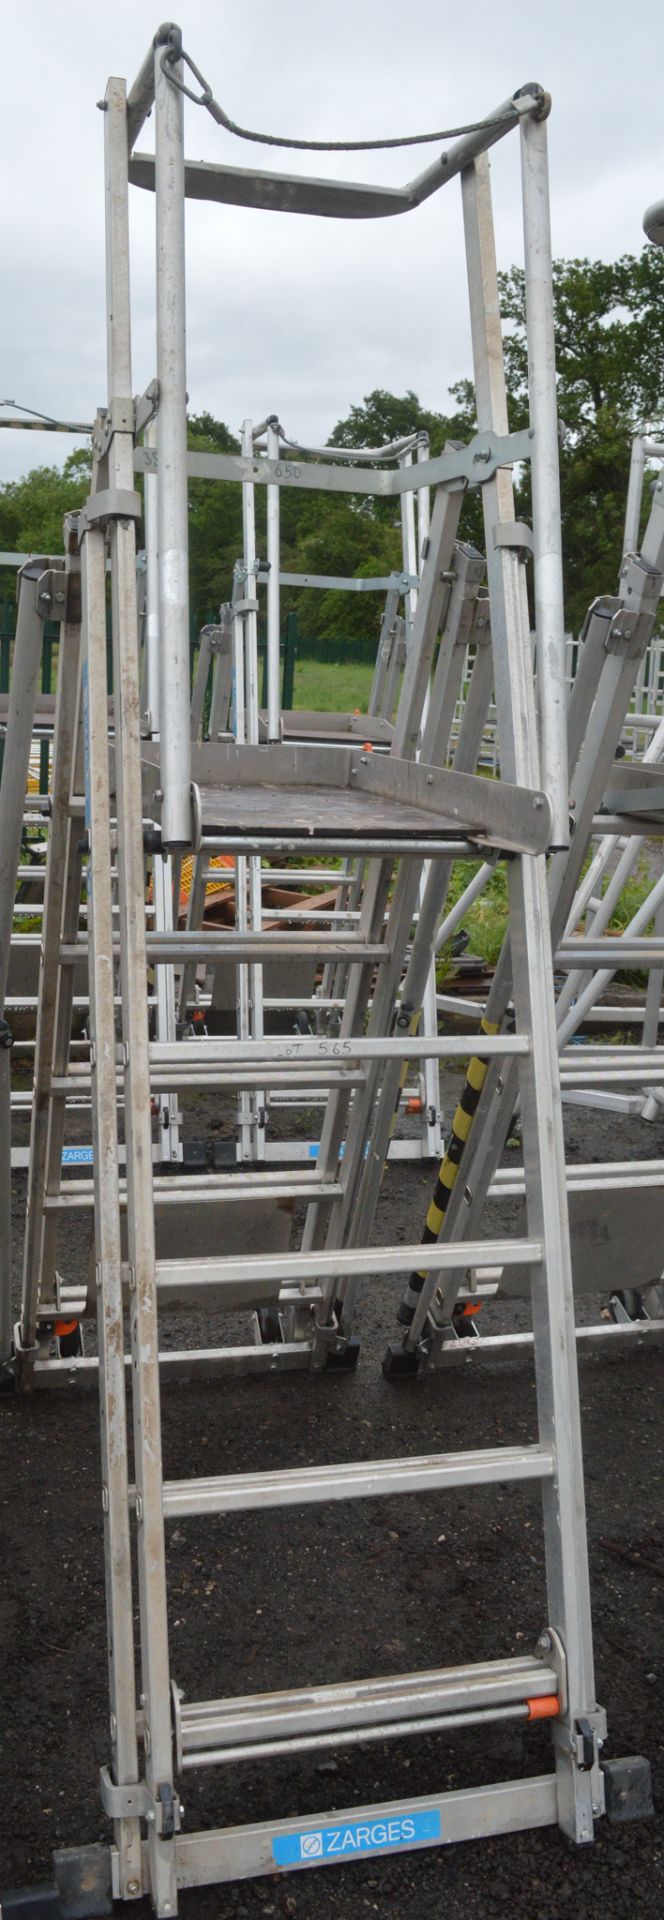 Zarges aluminium podium ladder A777935 - Image 2 of 2